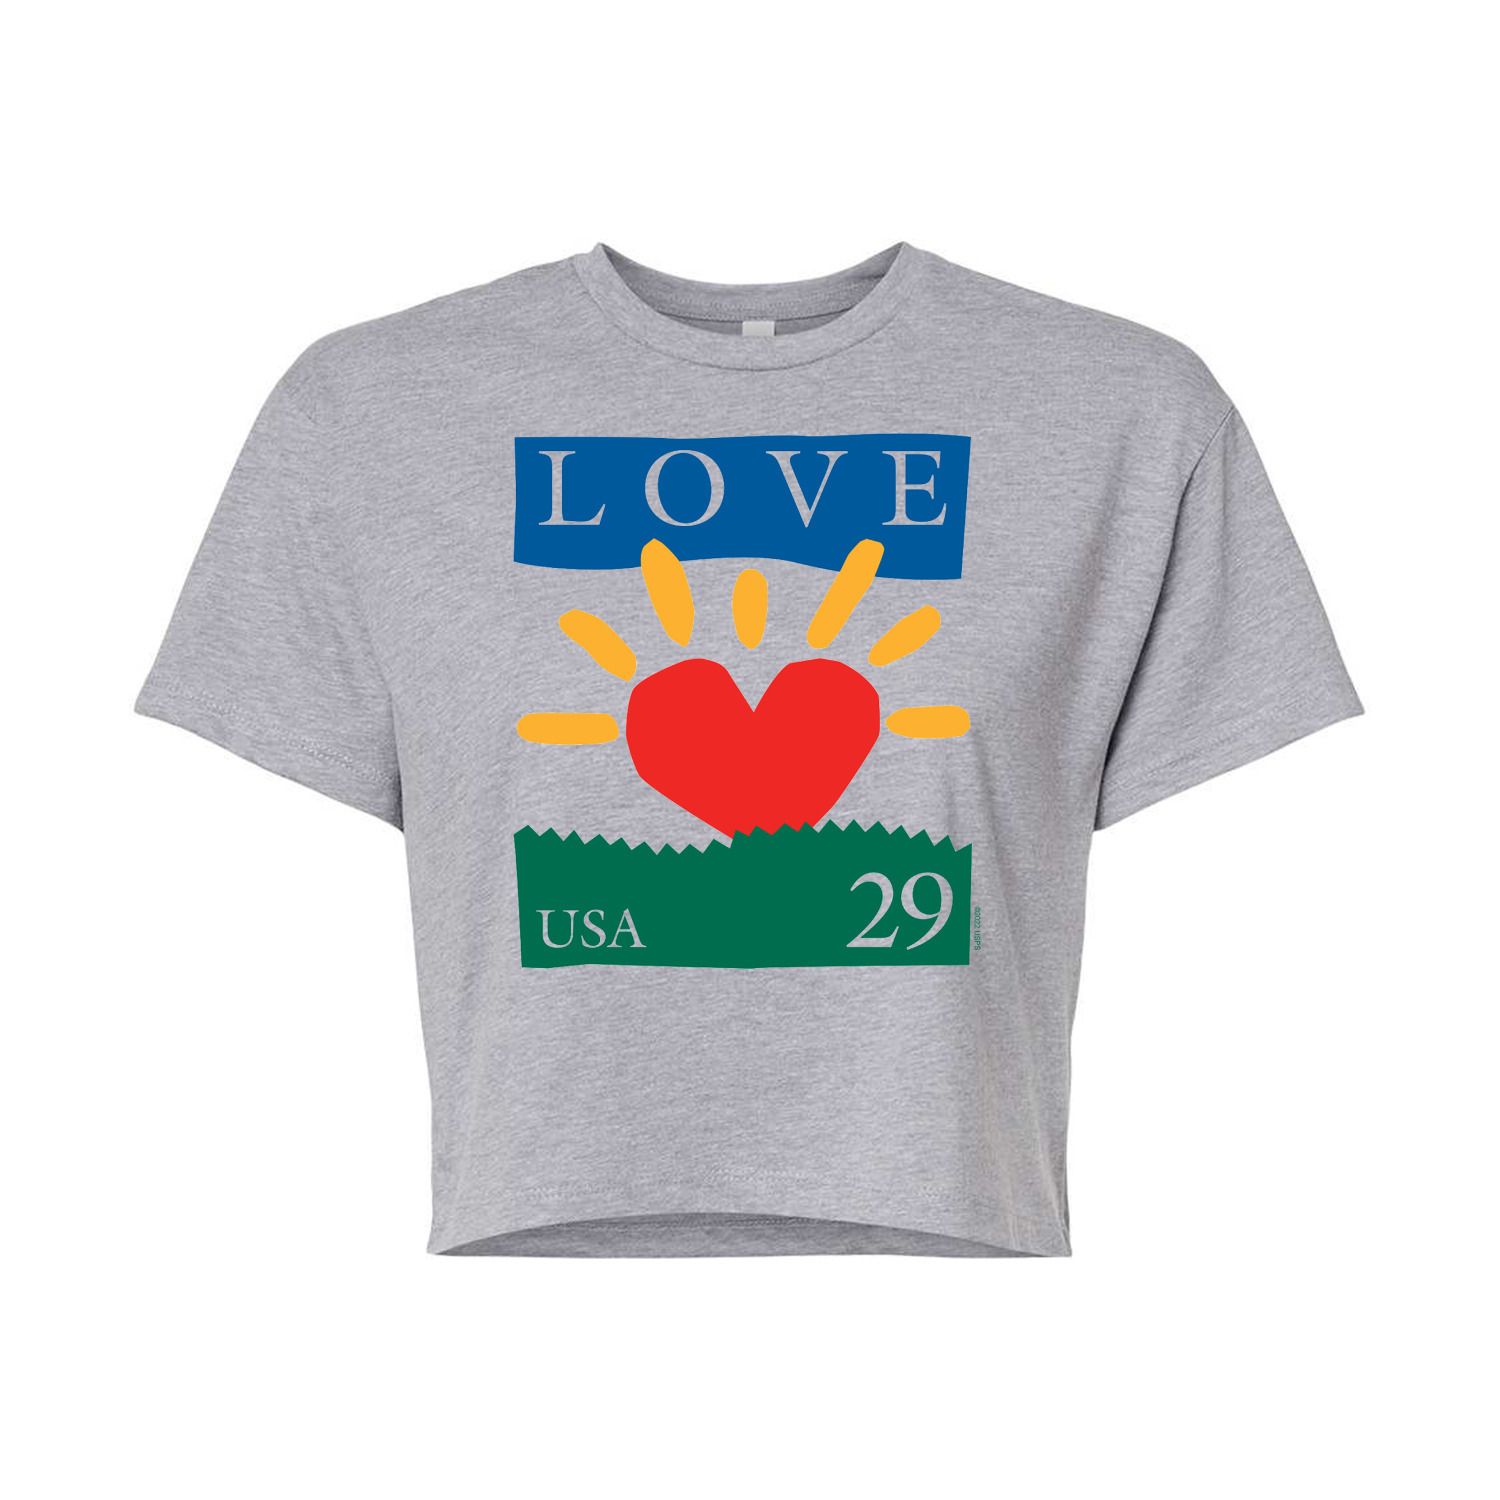 Укороченная футболка USPS Heart Love 29 для юниоров Licensed Character, серый укороченная худи usps love heart stamp для юниоров licensed character